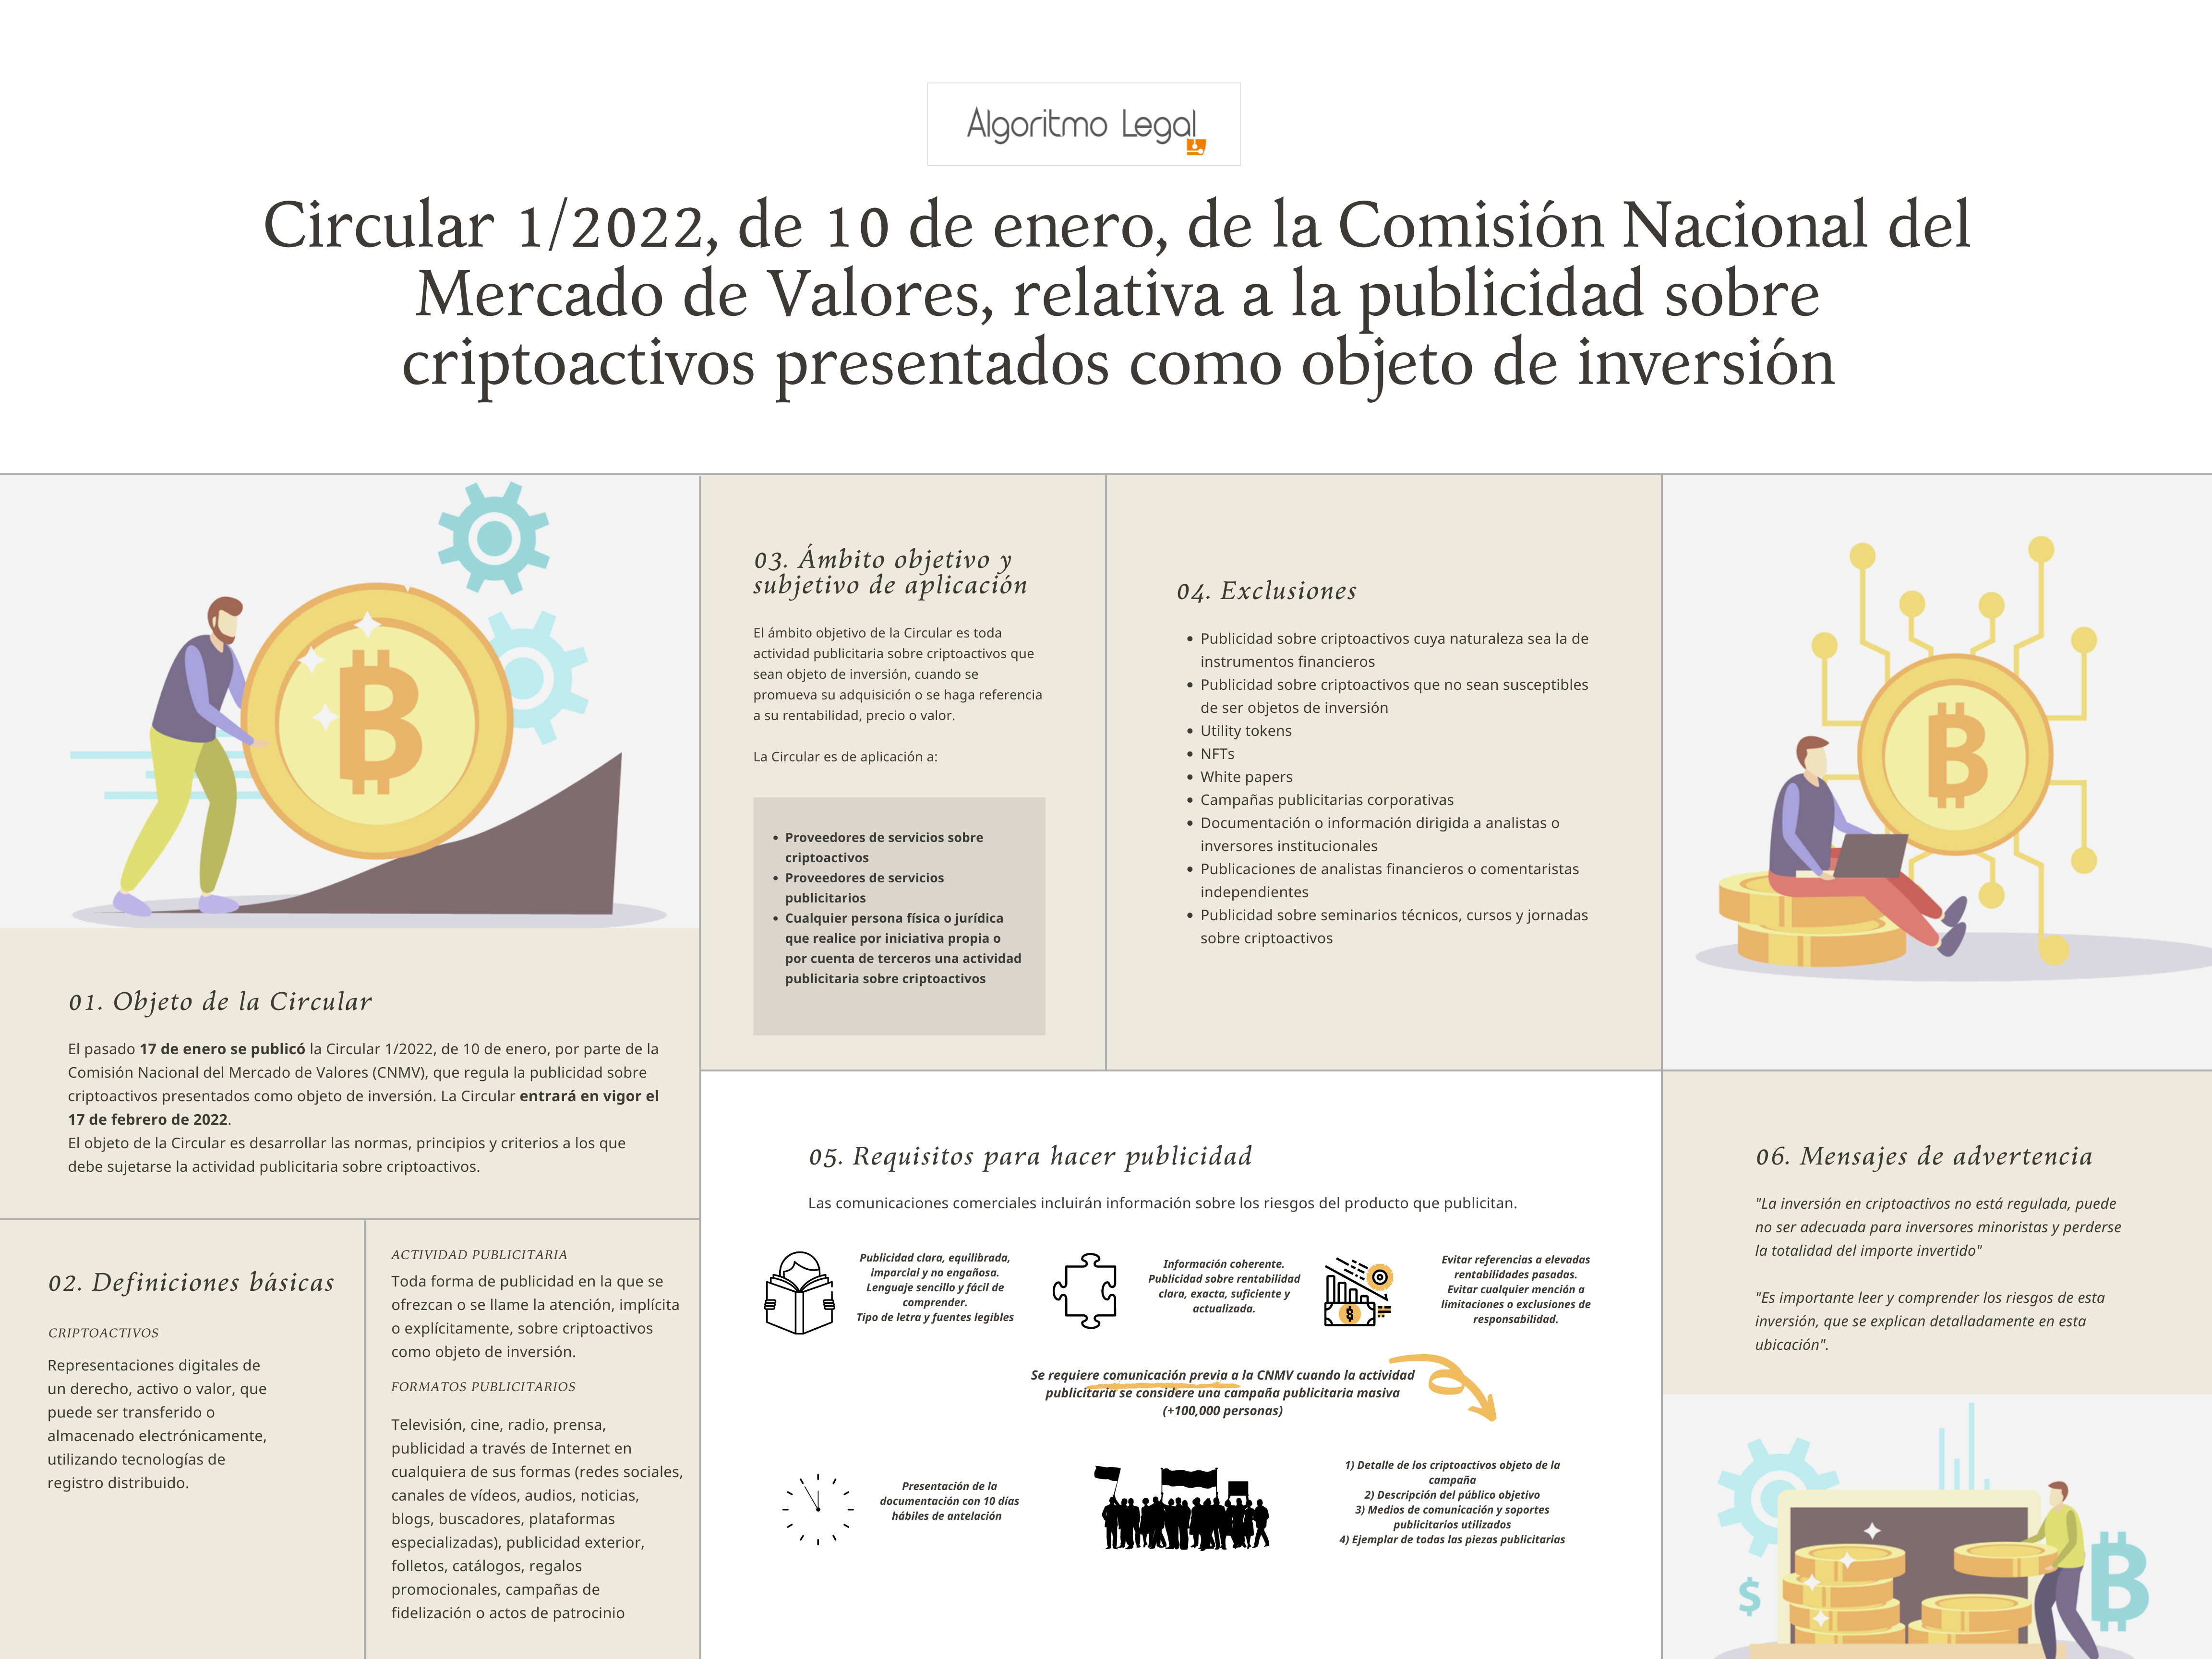 Publicidad sobre criptoactivos - CNMV